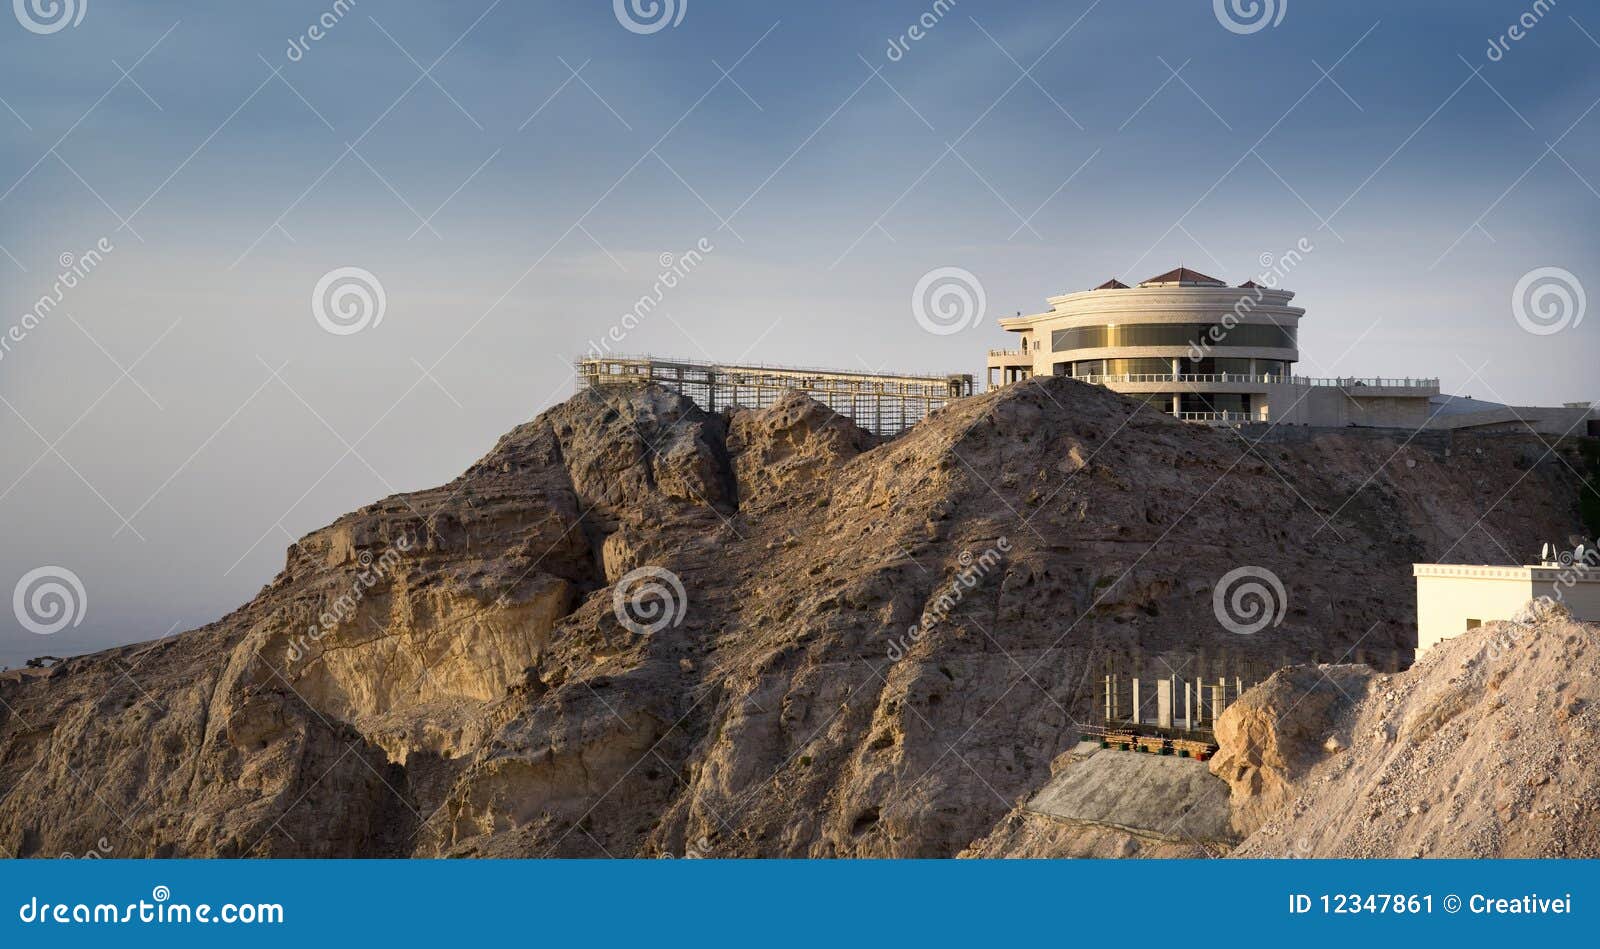 jebel hafeet mountain and palace